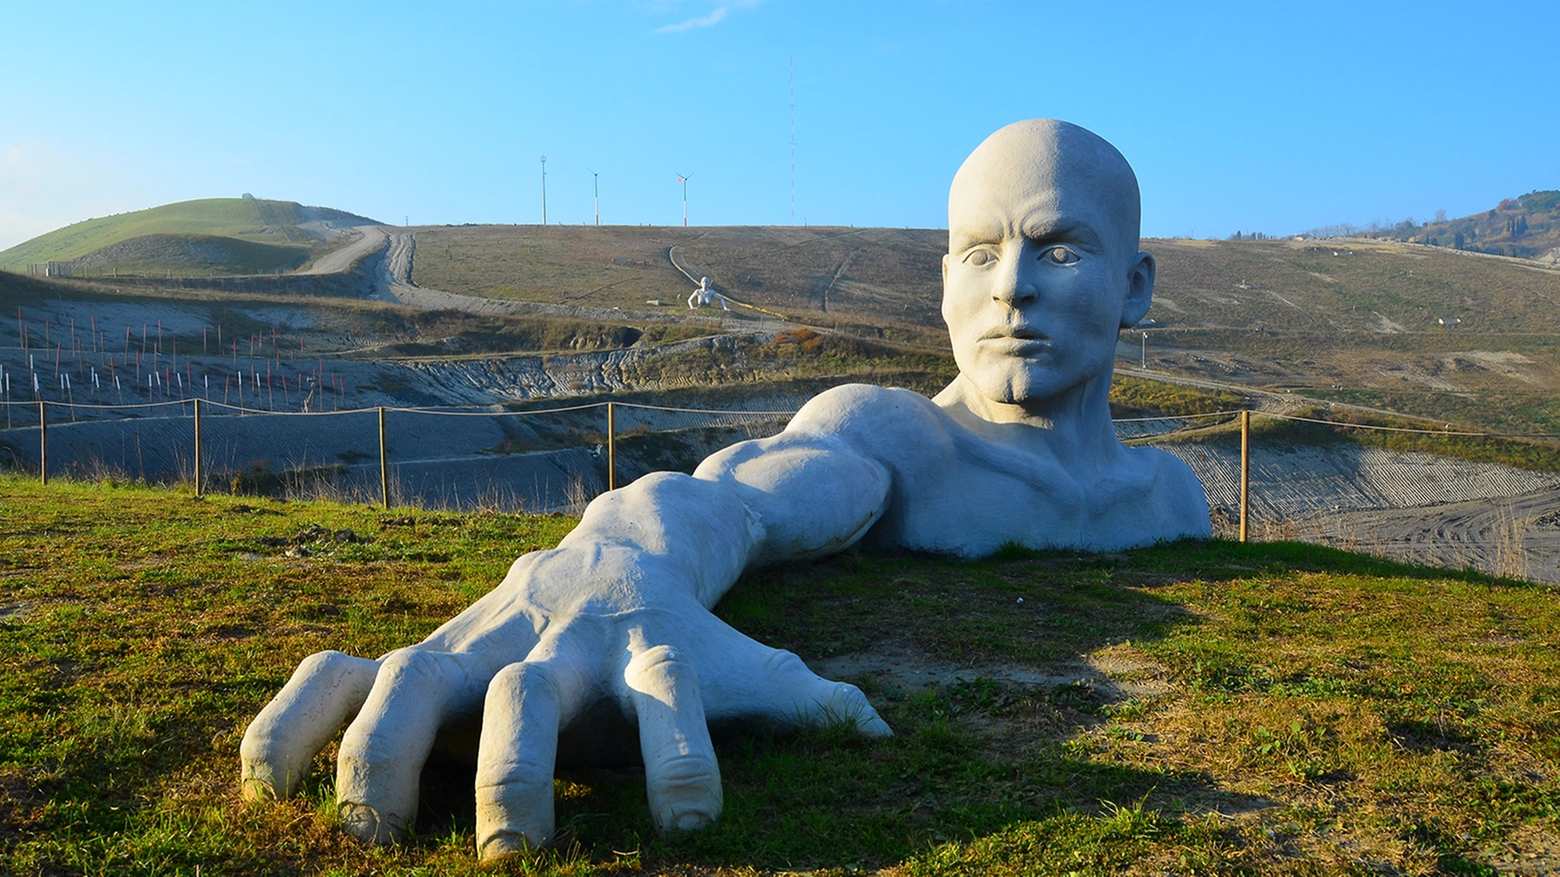 Giganti di Peccioli, una delle sculture presente nella discarica (Foto Fondazione Peccioliper)